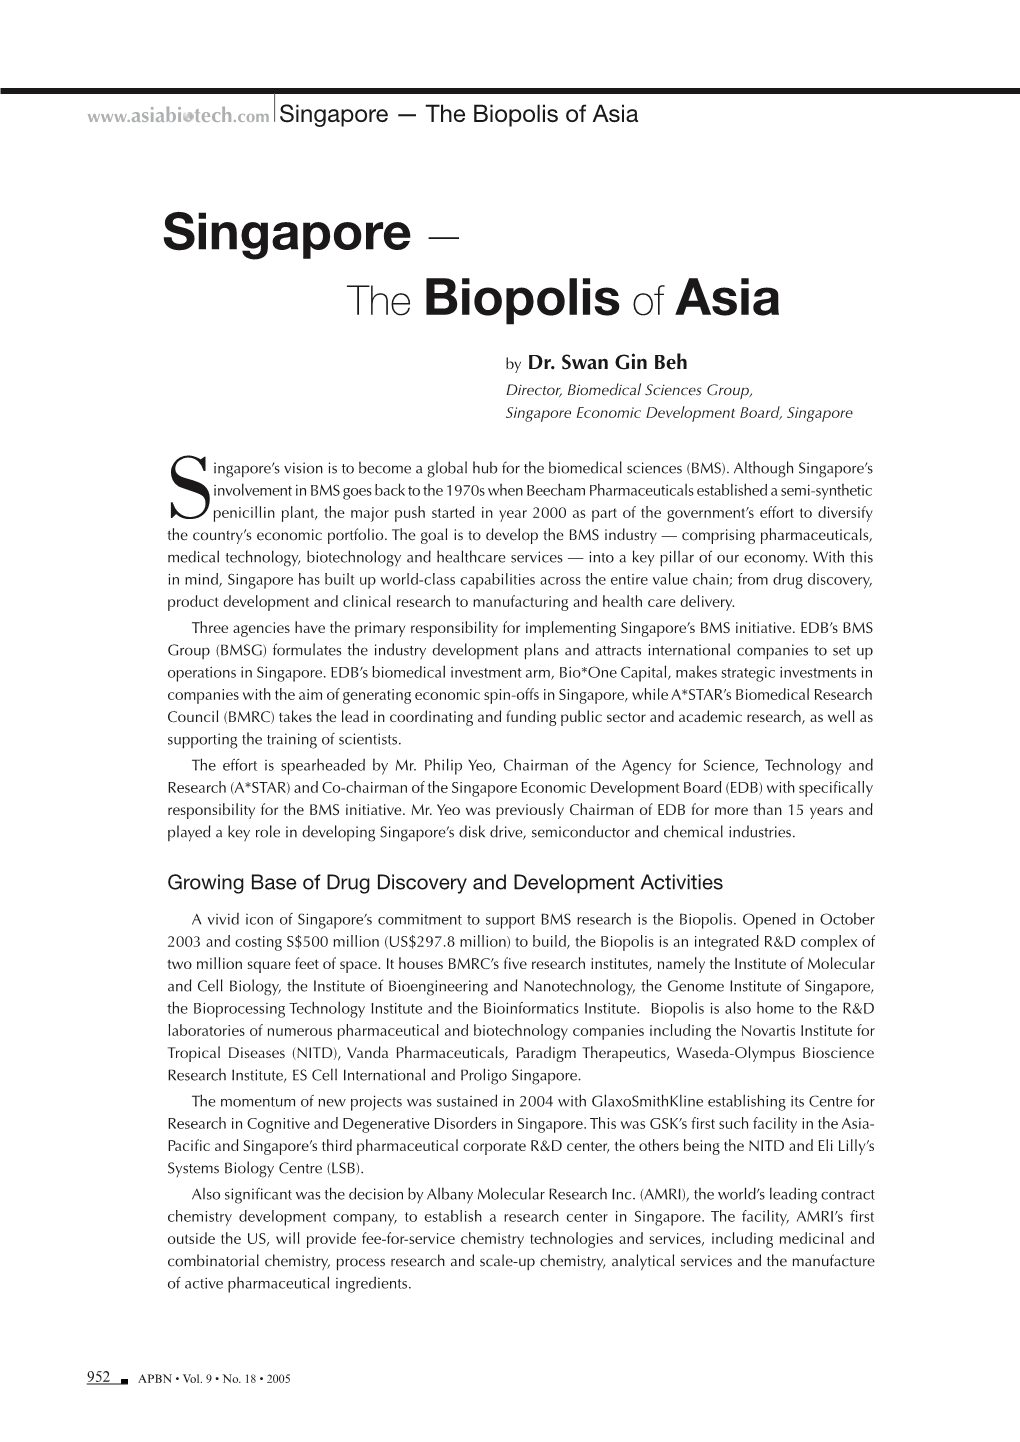 Singapore — the Biopolis of Asia